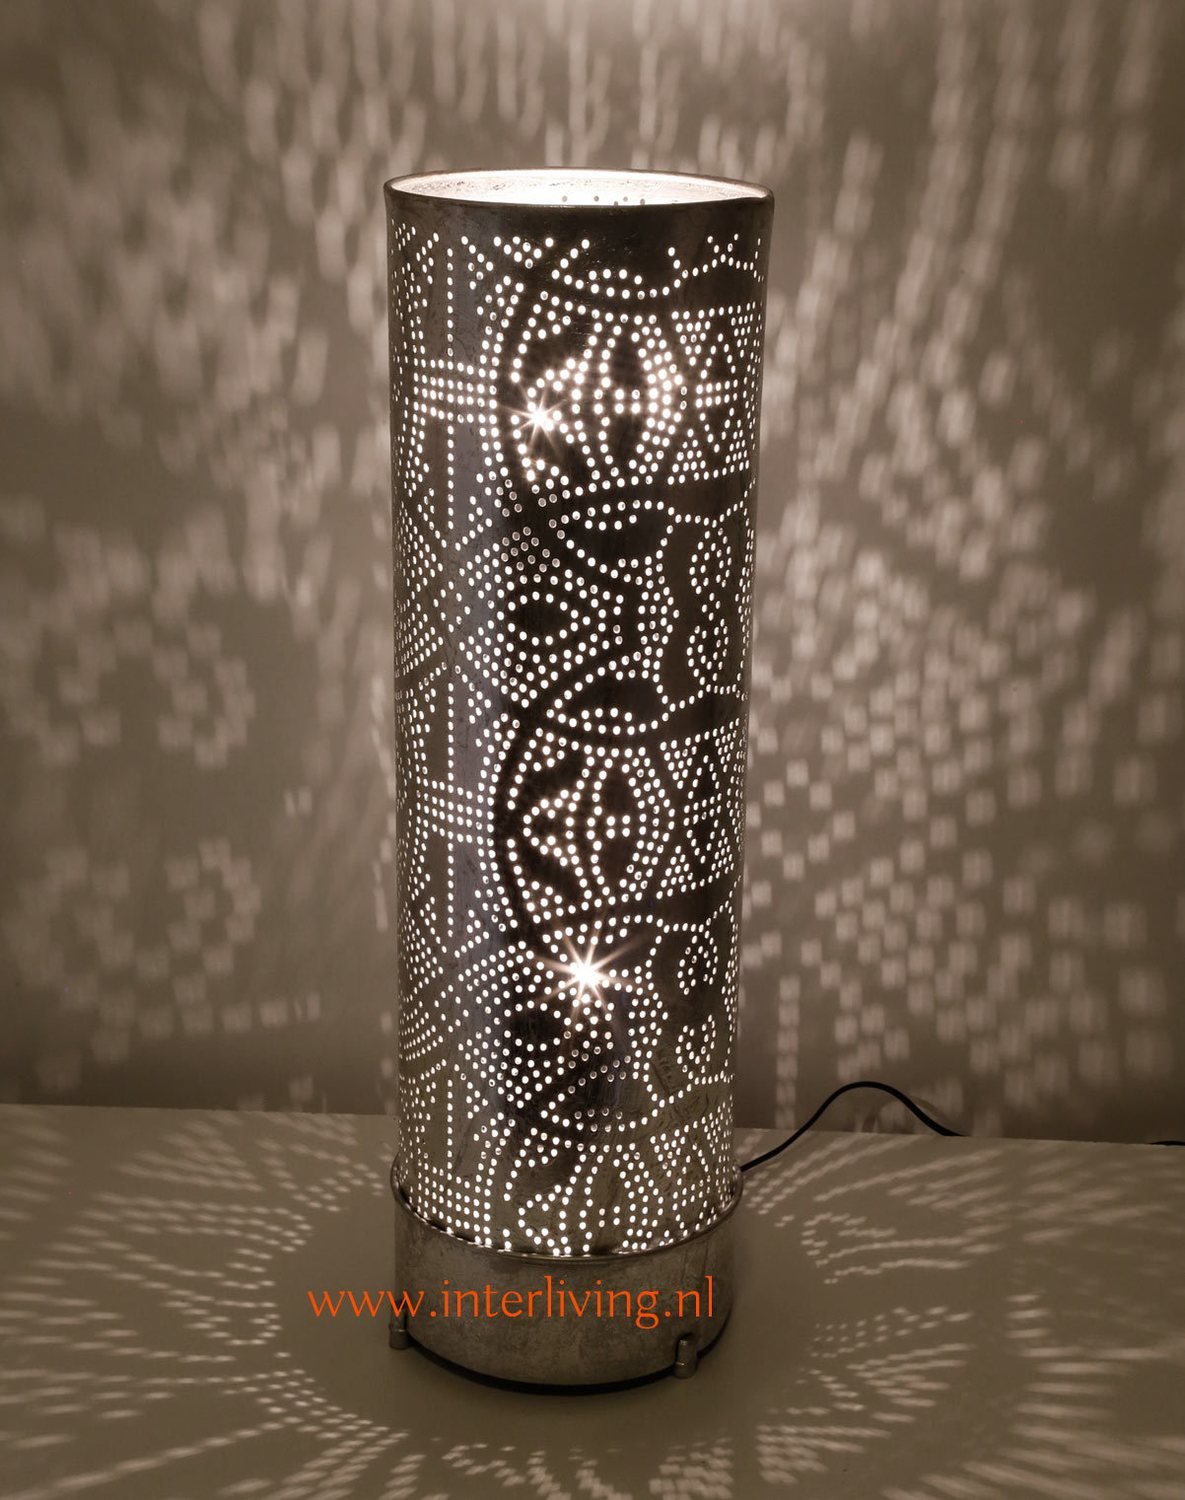 oosterse vloerlamp of staande lamp met filigrain gaatjes patronen van  metaal - vintage zilver look - diverse maten